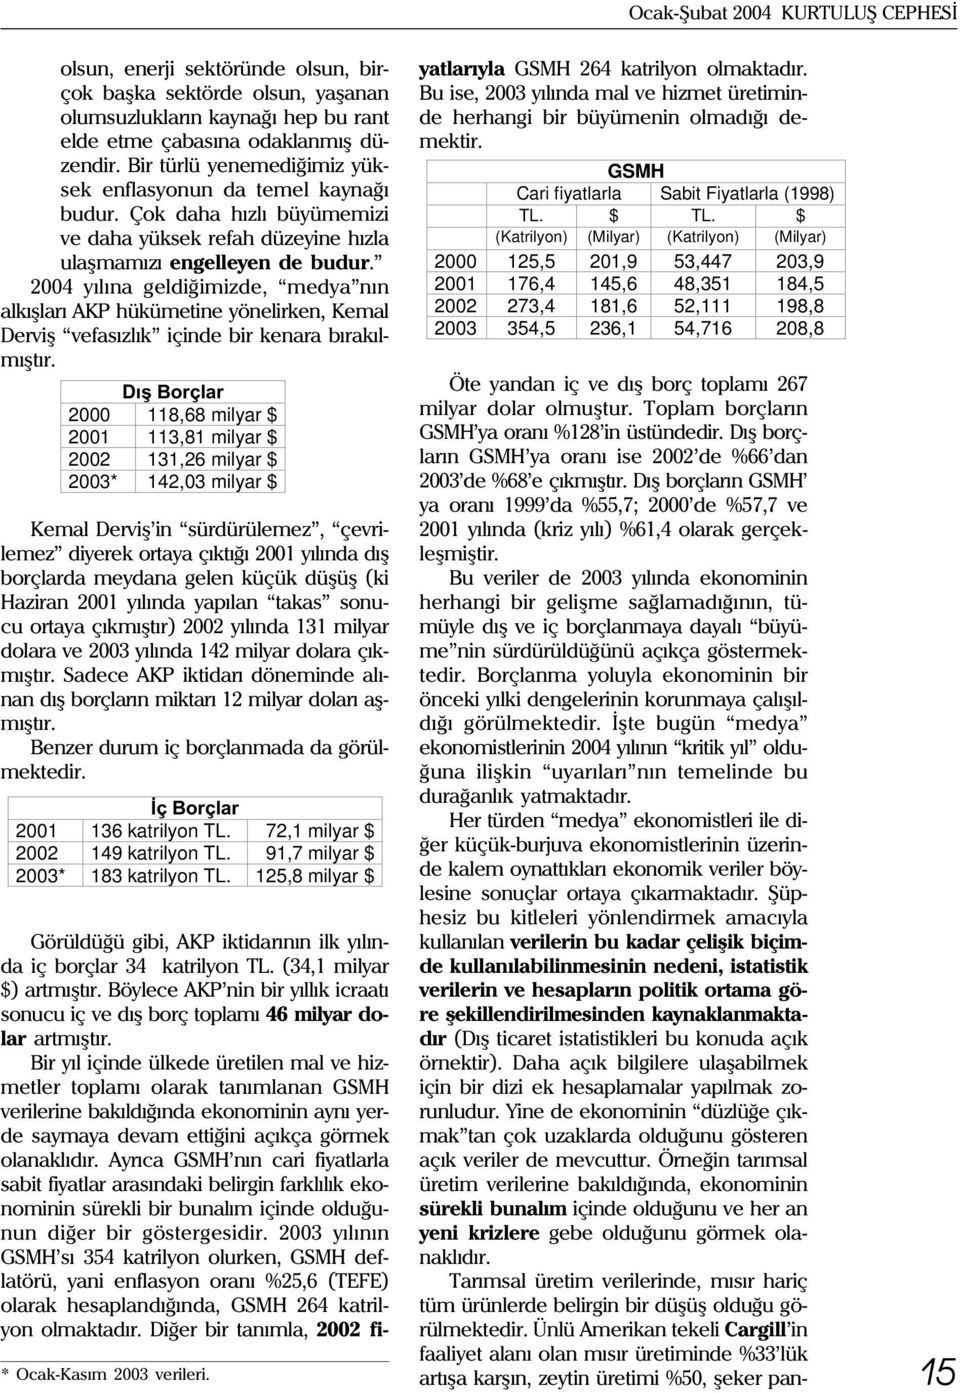 2004 yýlýna geldiðimizde, medya nýn alkýþlarý AKP hükümetine yönelirken, Kemal Derviþ vefasýzlýk içinde bir kenara býrakýlmýþtýr.